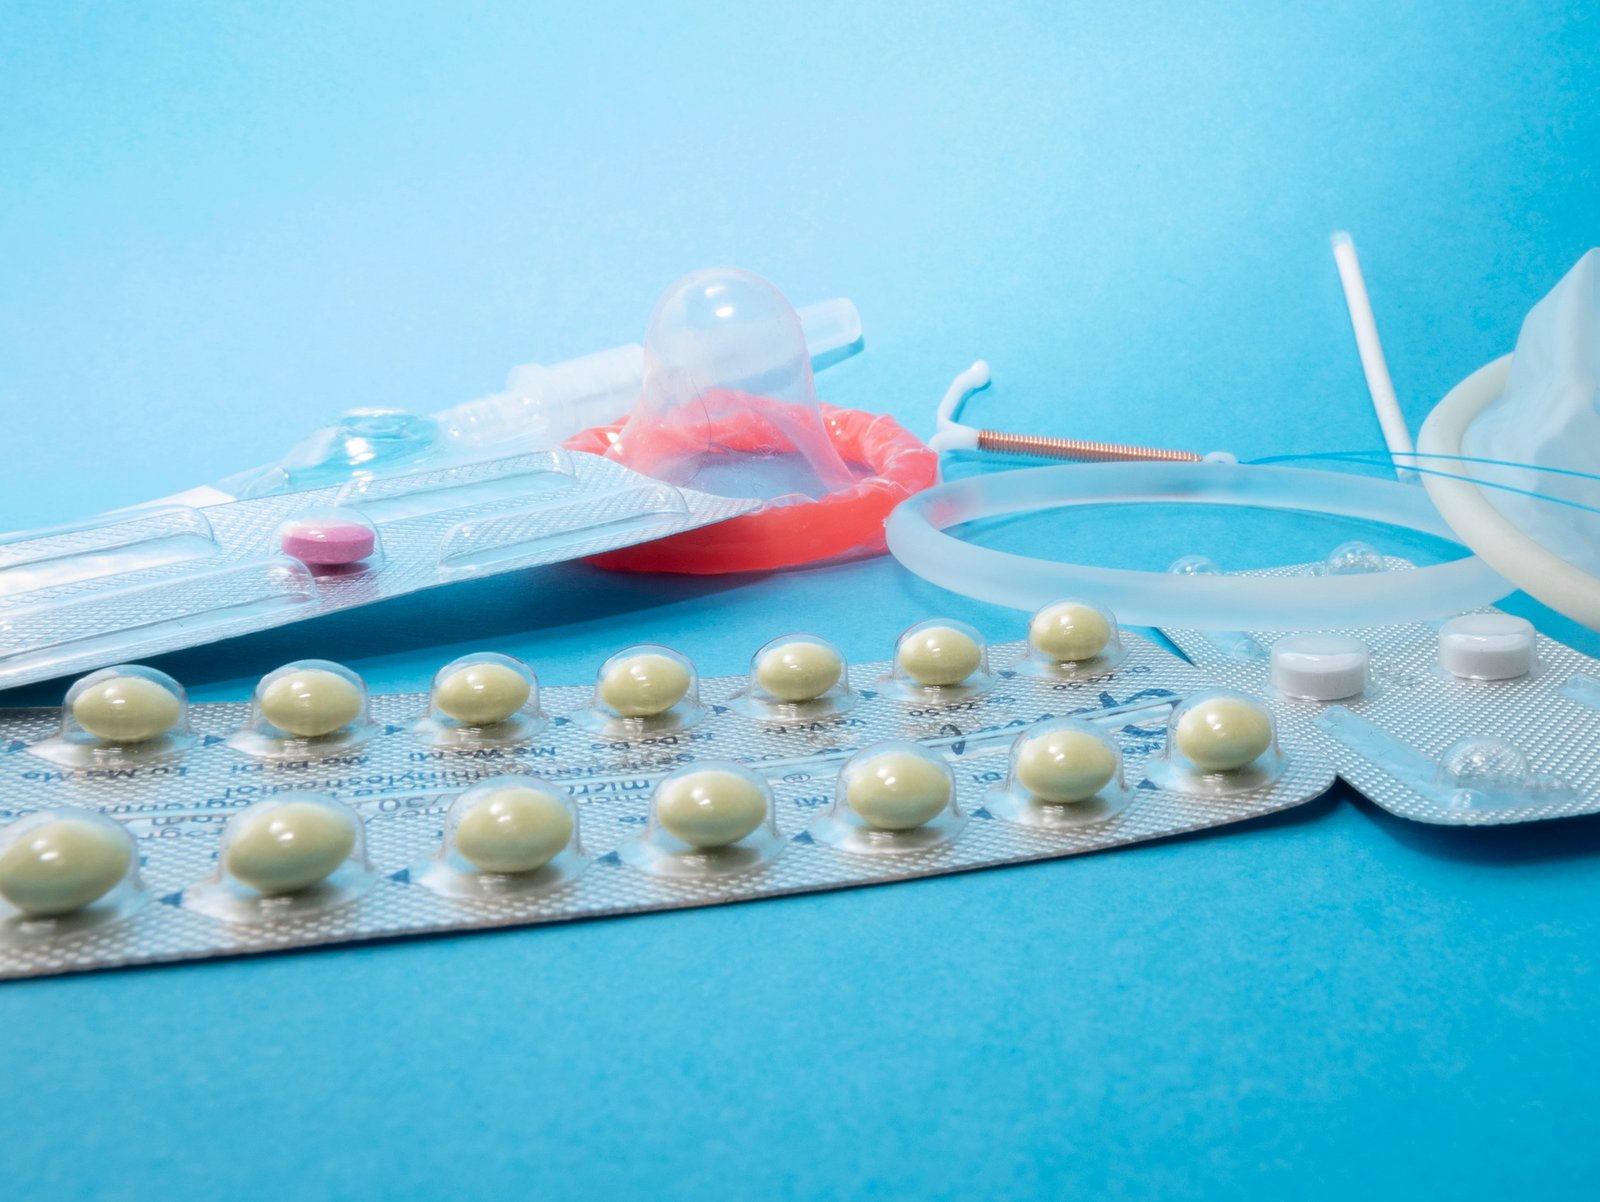 Kondomi, kontracepcijske tabletke in druga kontracepcijska sredstva